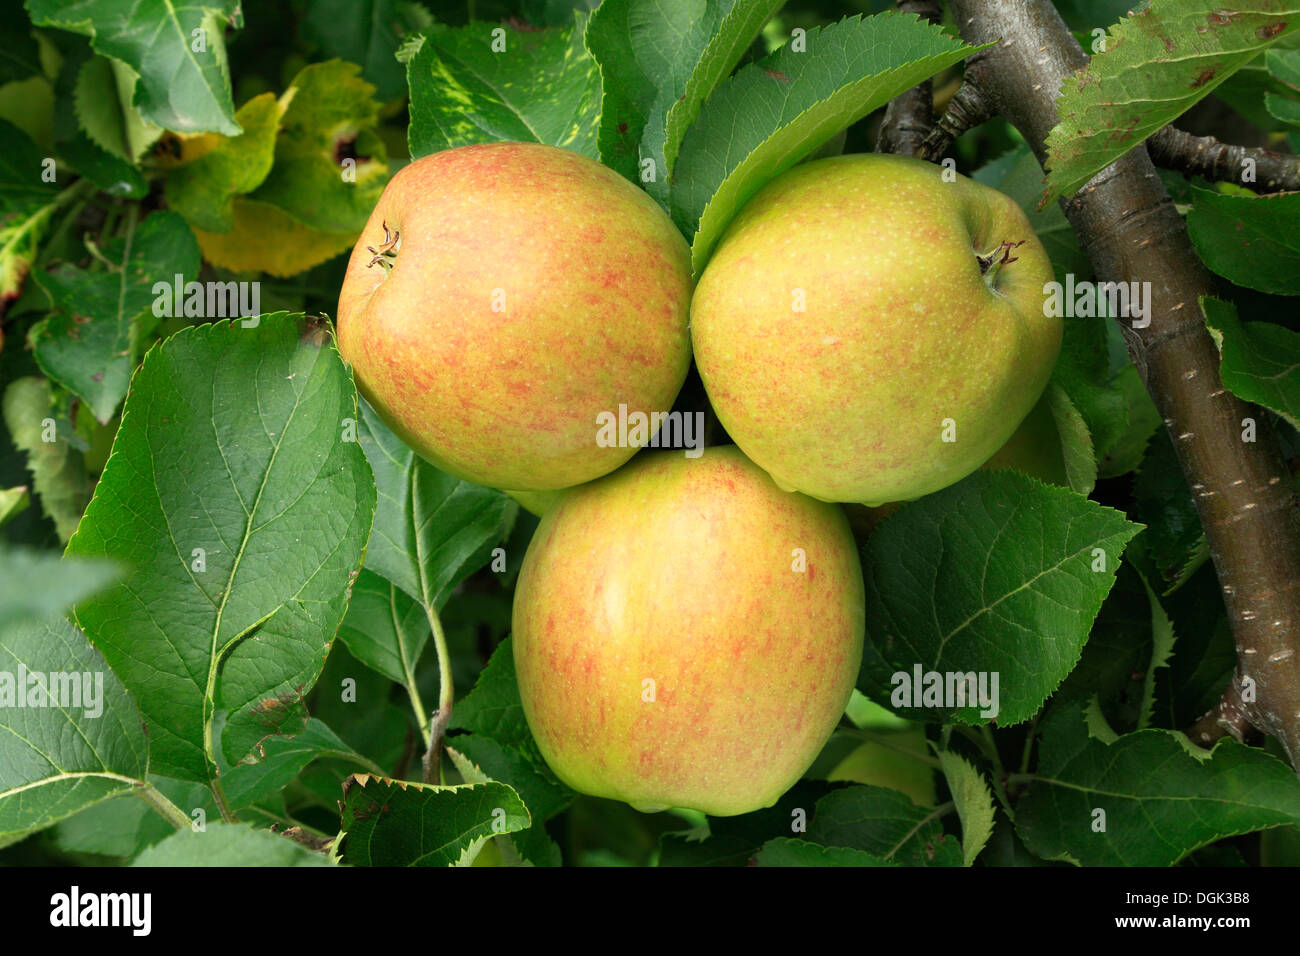 Apple 'Corona de Oro', Malus domestica manzanas diversas variedades de árboles crecientes Foto de stock